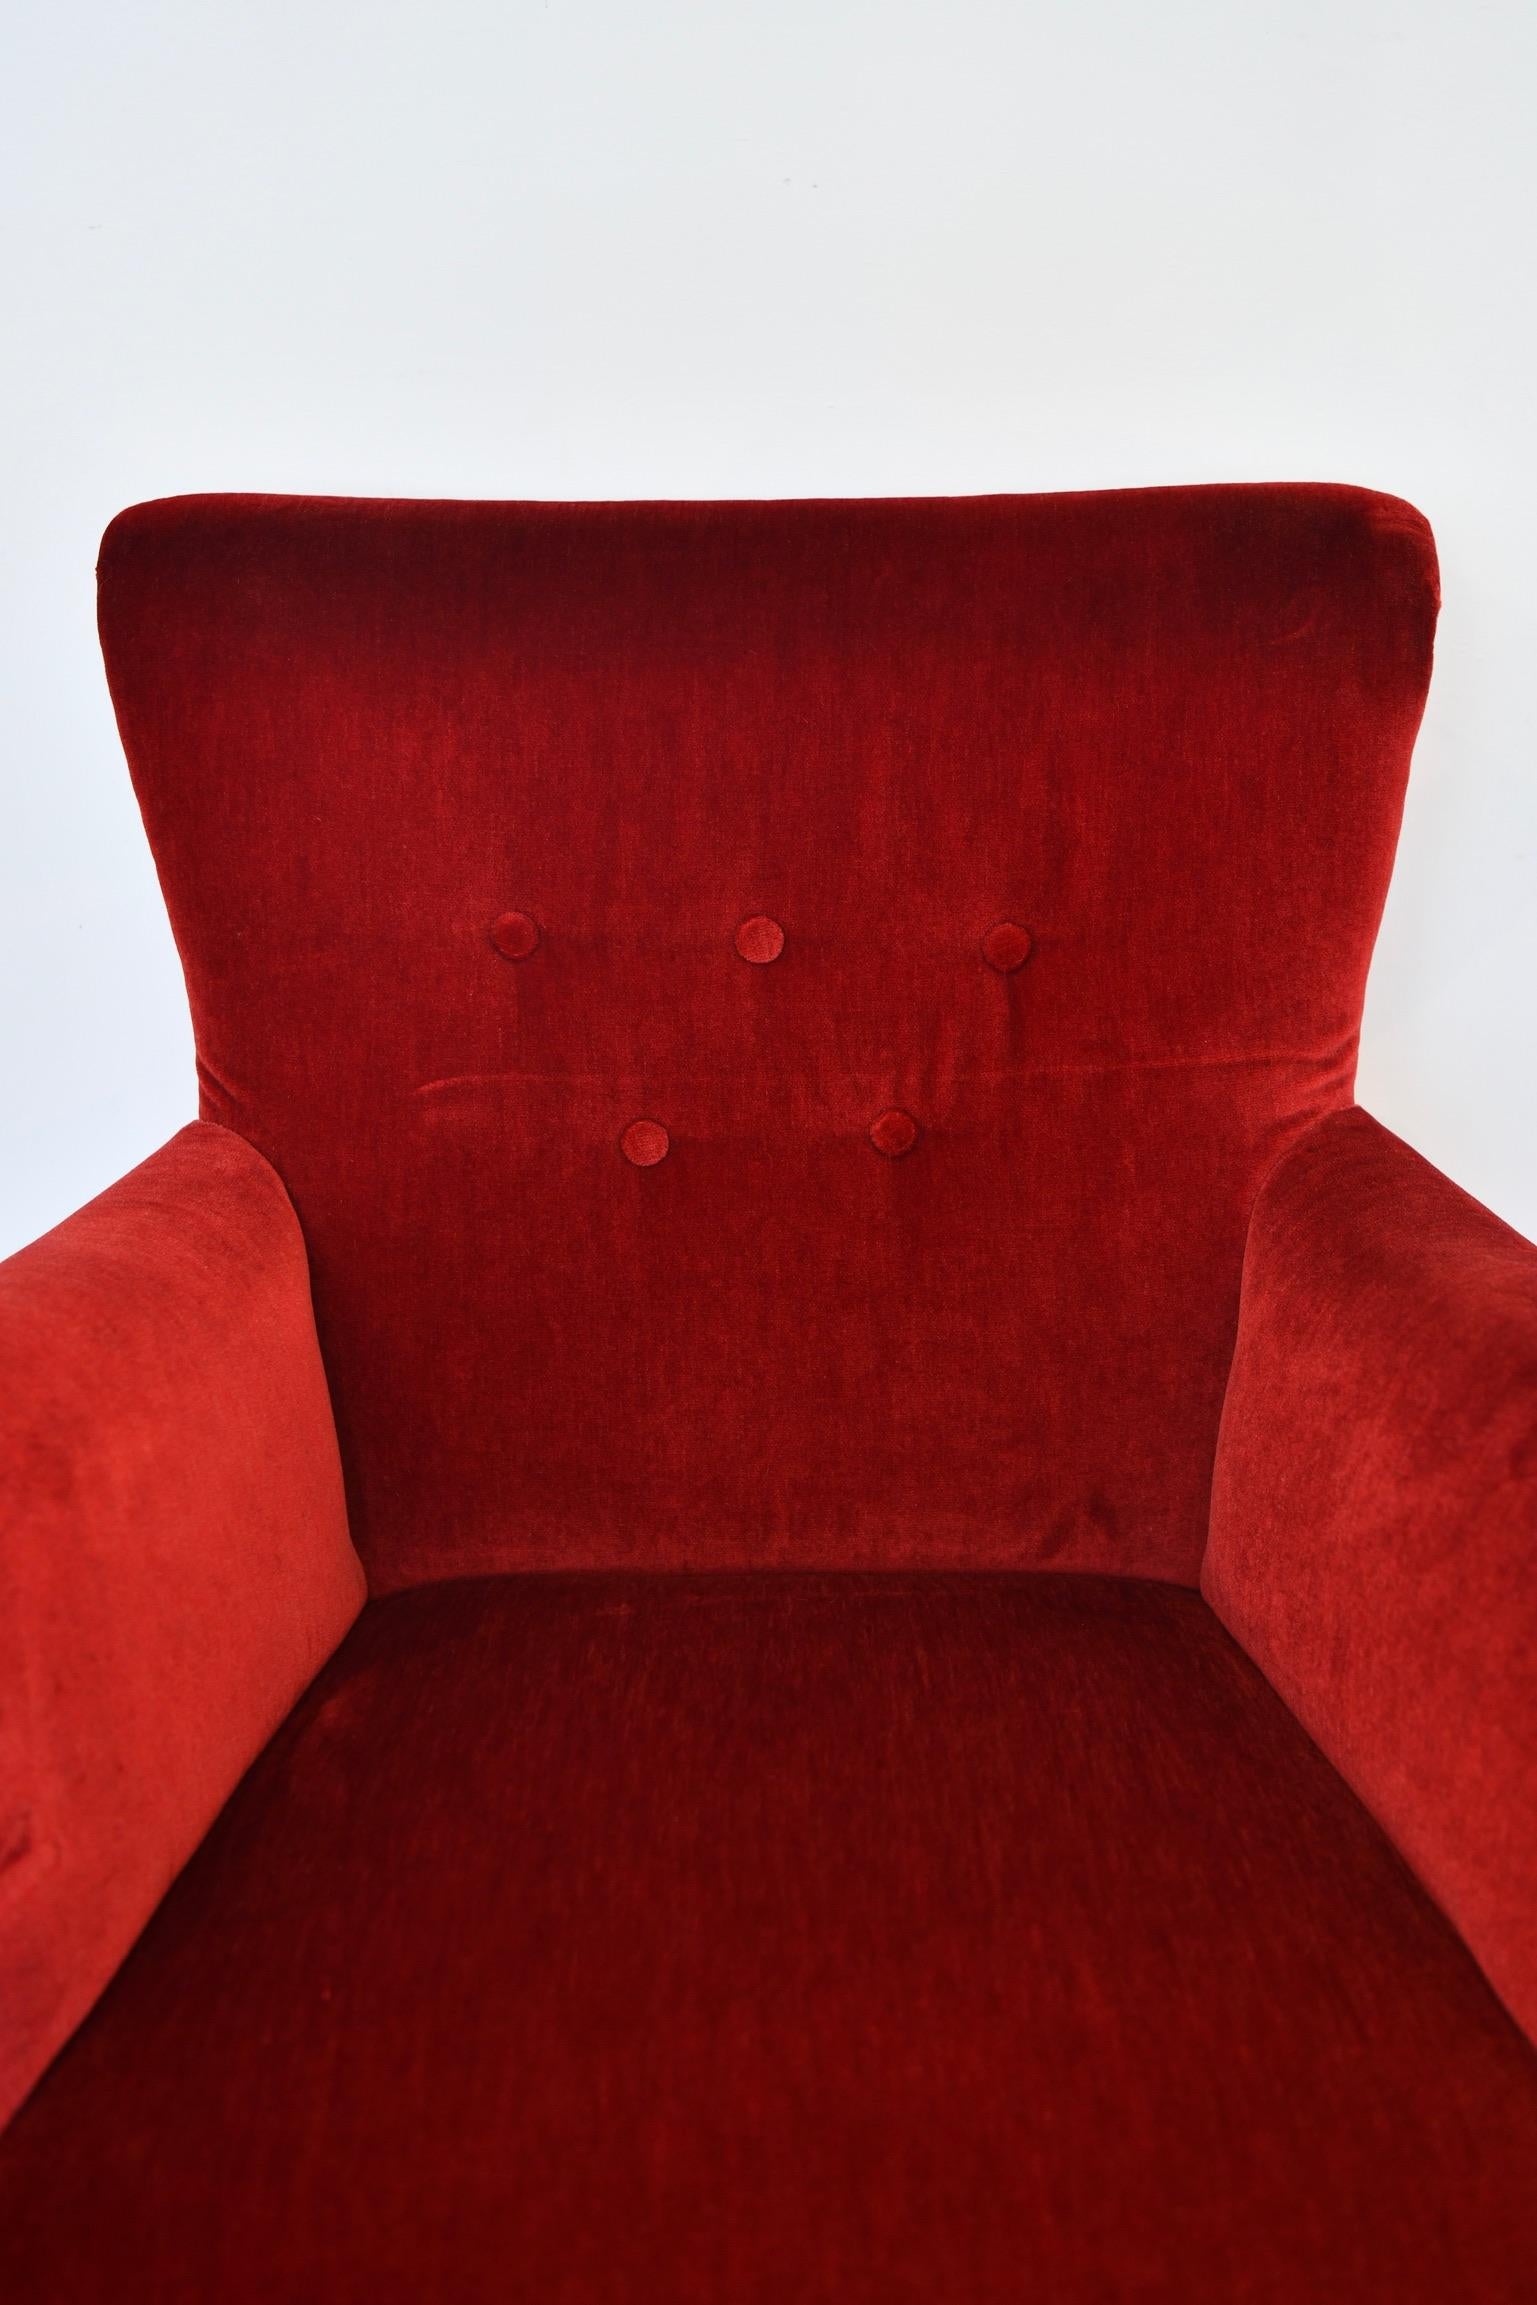 Mohair Frits Henningsen Red Velvet Lounge Chair